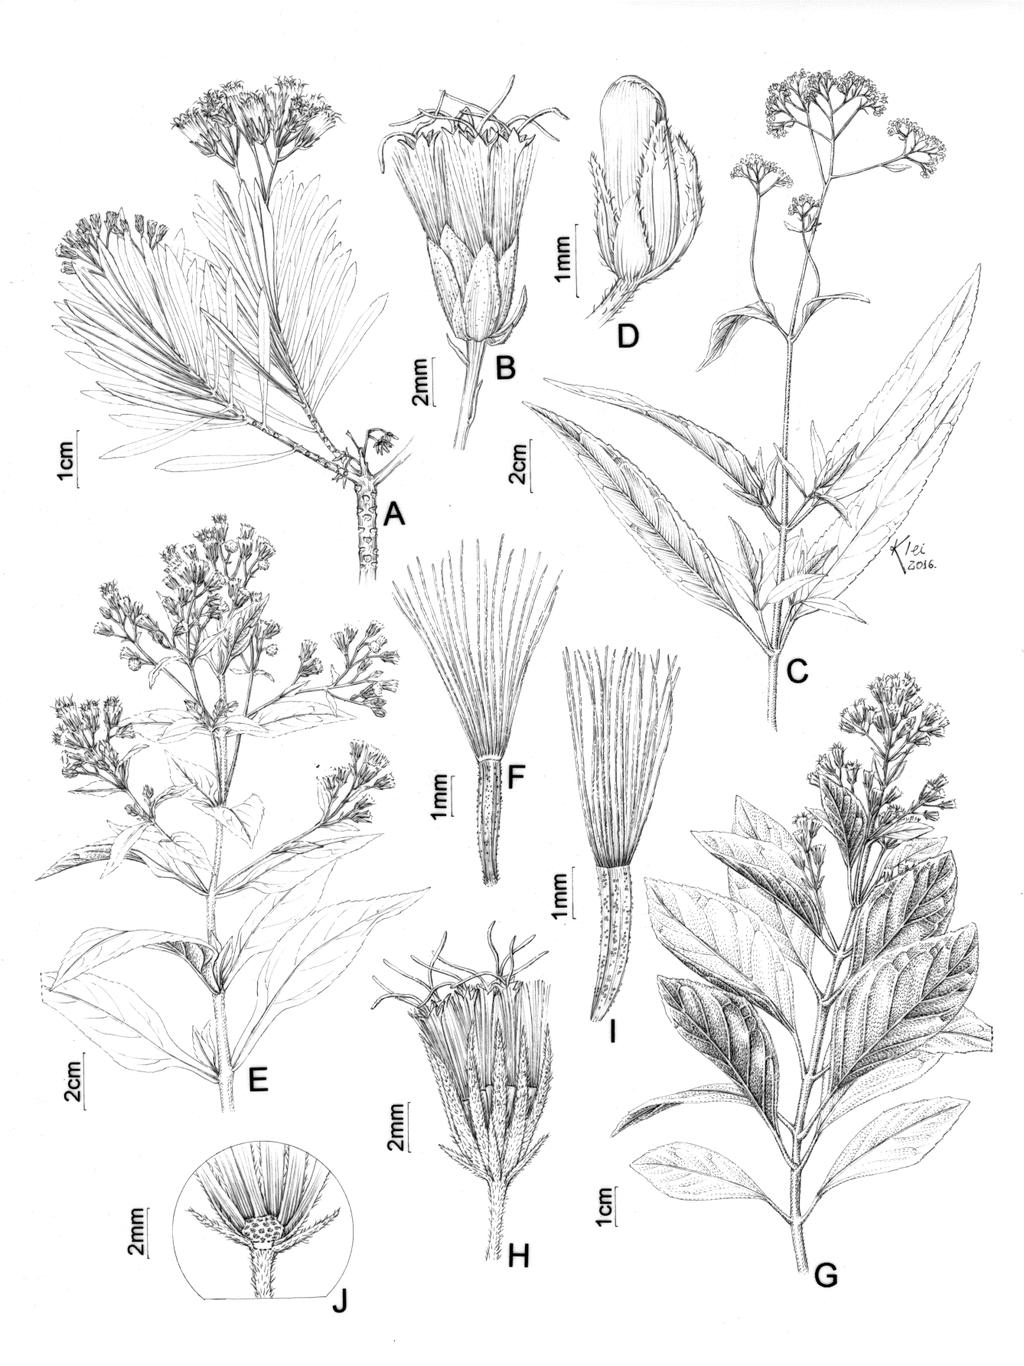 Flora da Serra do Cipó, Minas Gerais: Asteraceae Eupatorieae 133 Fig. 2: A-B. Disynaphia praeficta (B.L.Rob.) R.M.King & H.Rob. A. Ramo. B. Invólucro. C-D. Grazielia intermedia (DC.) R.M.King & H.Rob. C. Ramo. D. Invólucro. E-F.